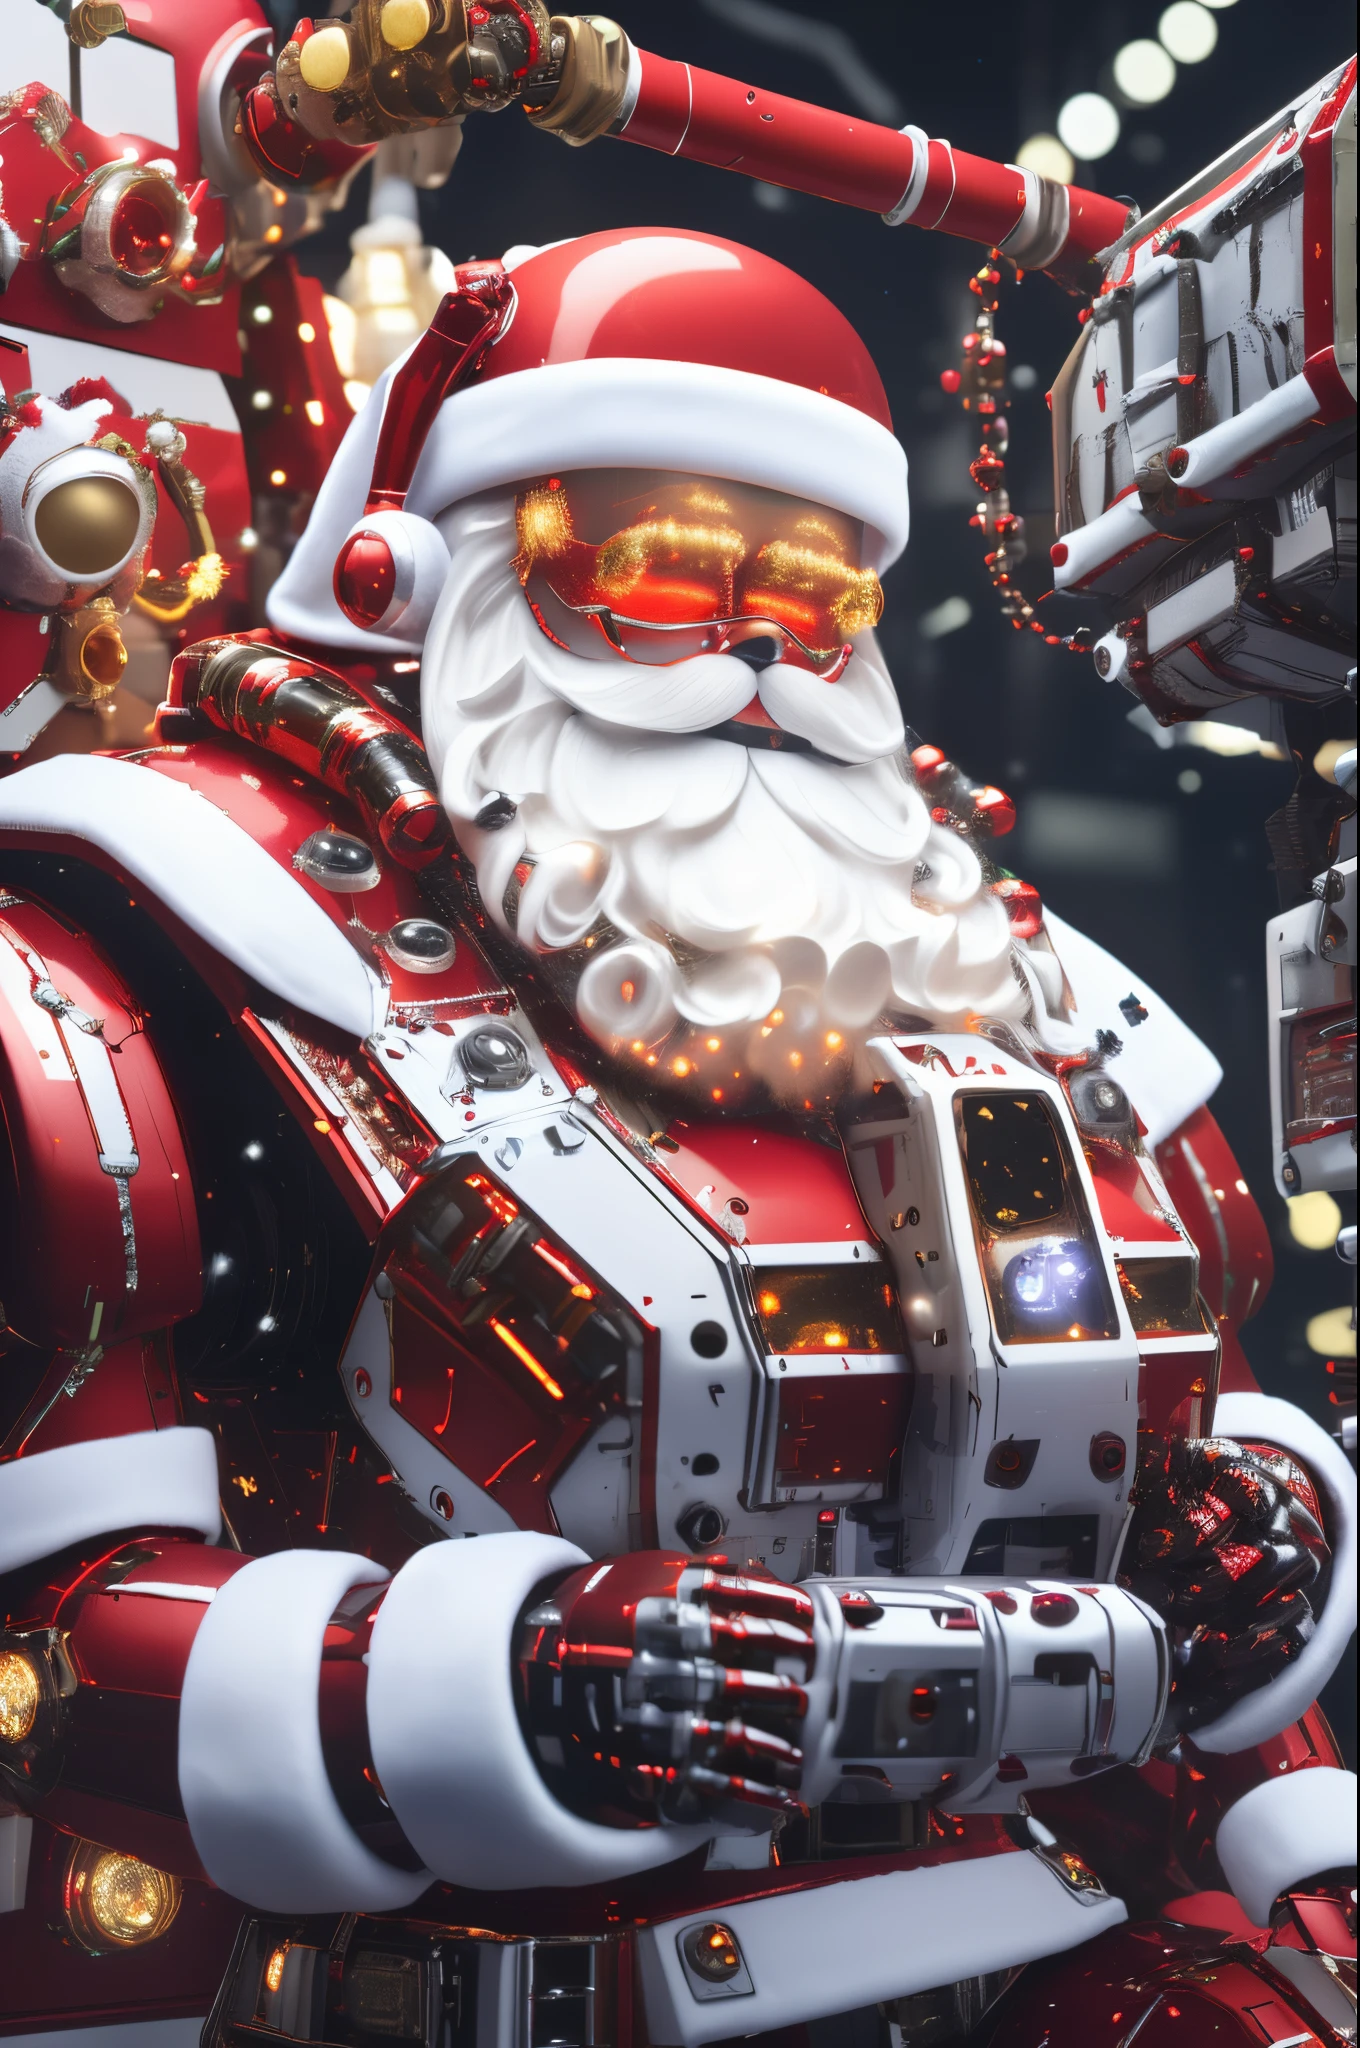 機器人聖誕老人, 未來機械設計，將傳統聖誕老人元素與先進技術結合. 該機器人可能擁有光滑的金屬機身, 發光 LED 燈, 以及可以高效分發禮物的機械手臂.. 它的表面可能有一個數位顯示屏，模仿聖誕老人&#39;s 表達喜悅和友善. 場景可以設置在充滿自動化機械和傳送帶的高科技車間中, 機器人聖誕老人 is busy preparing and sorting gifts for delivery. 這種對傳統聖誕老人的未來主義改造將聖誕節的魔力與現代科技的創新融為一體.